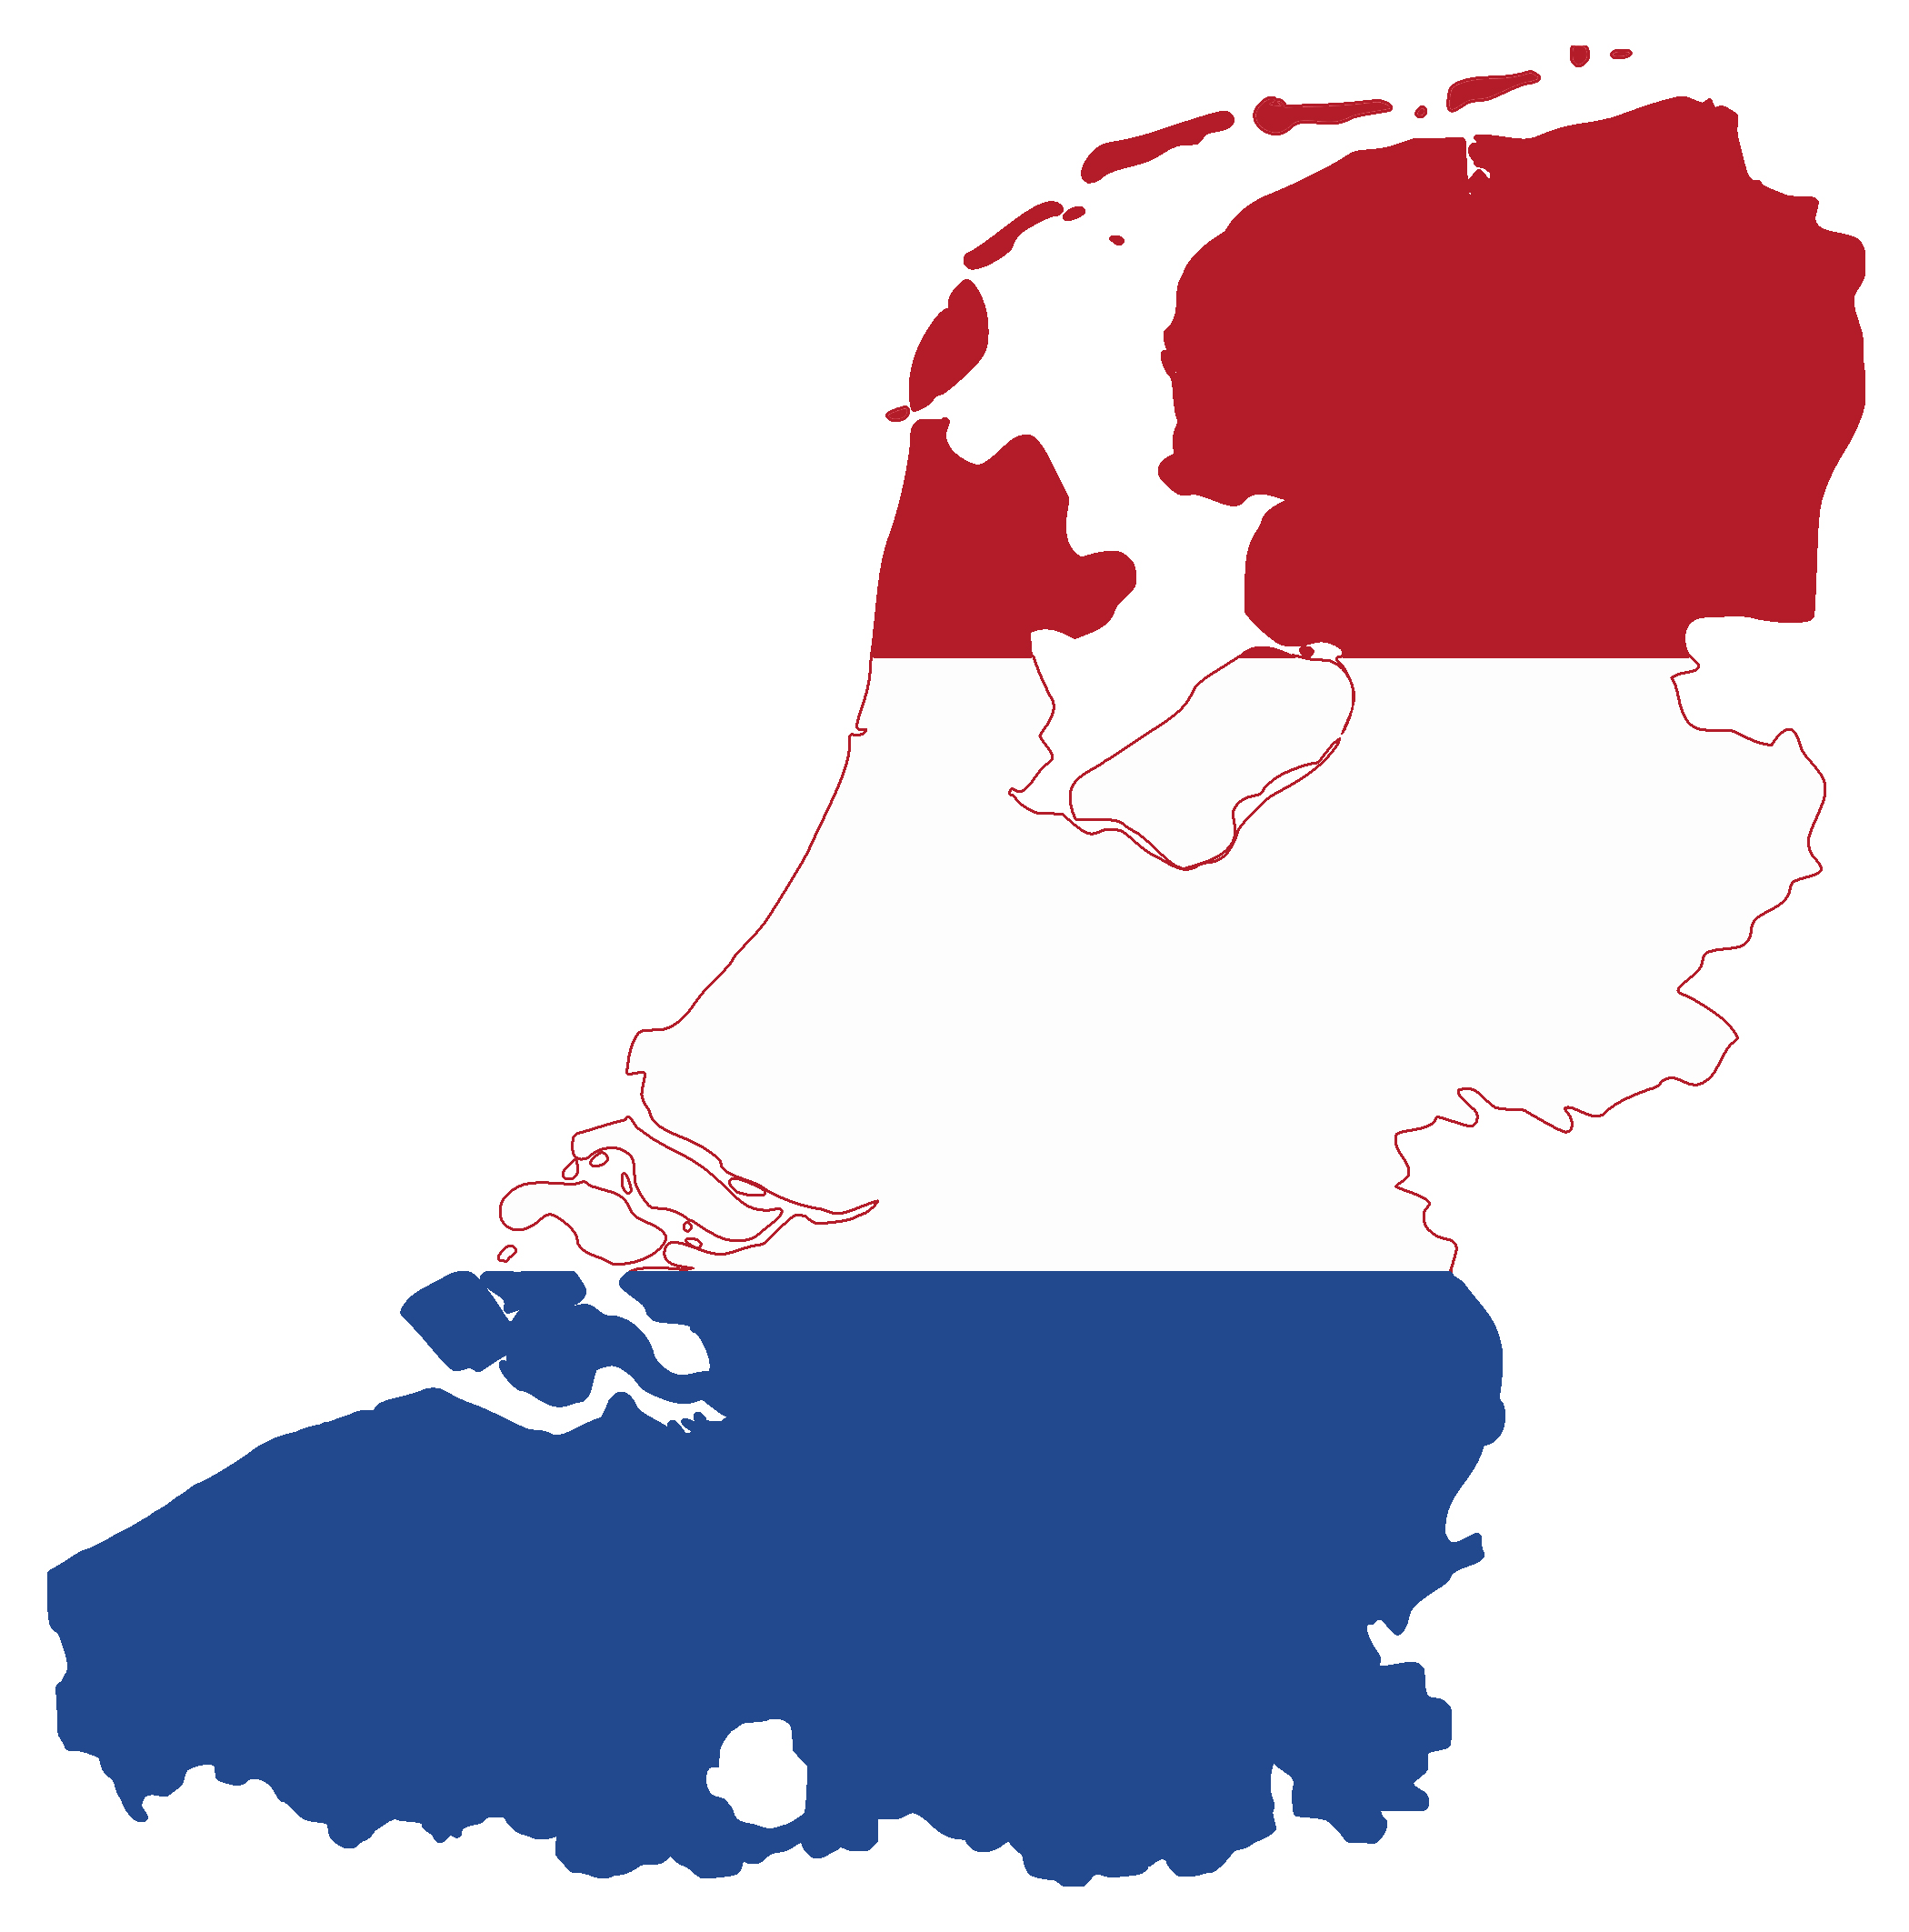 Paises Bajos Mapa Europa : Mayor país constituyente del reino de los